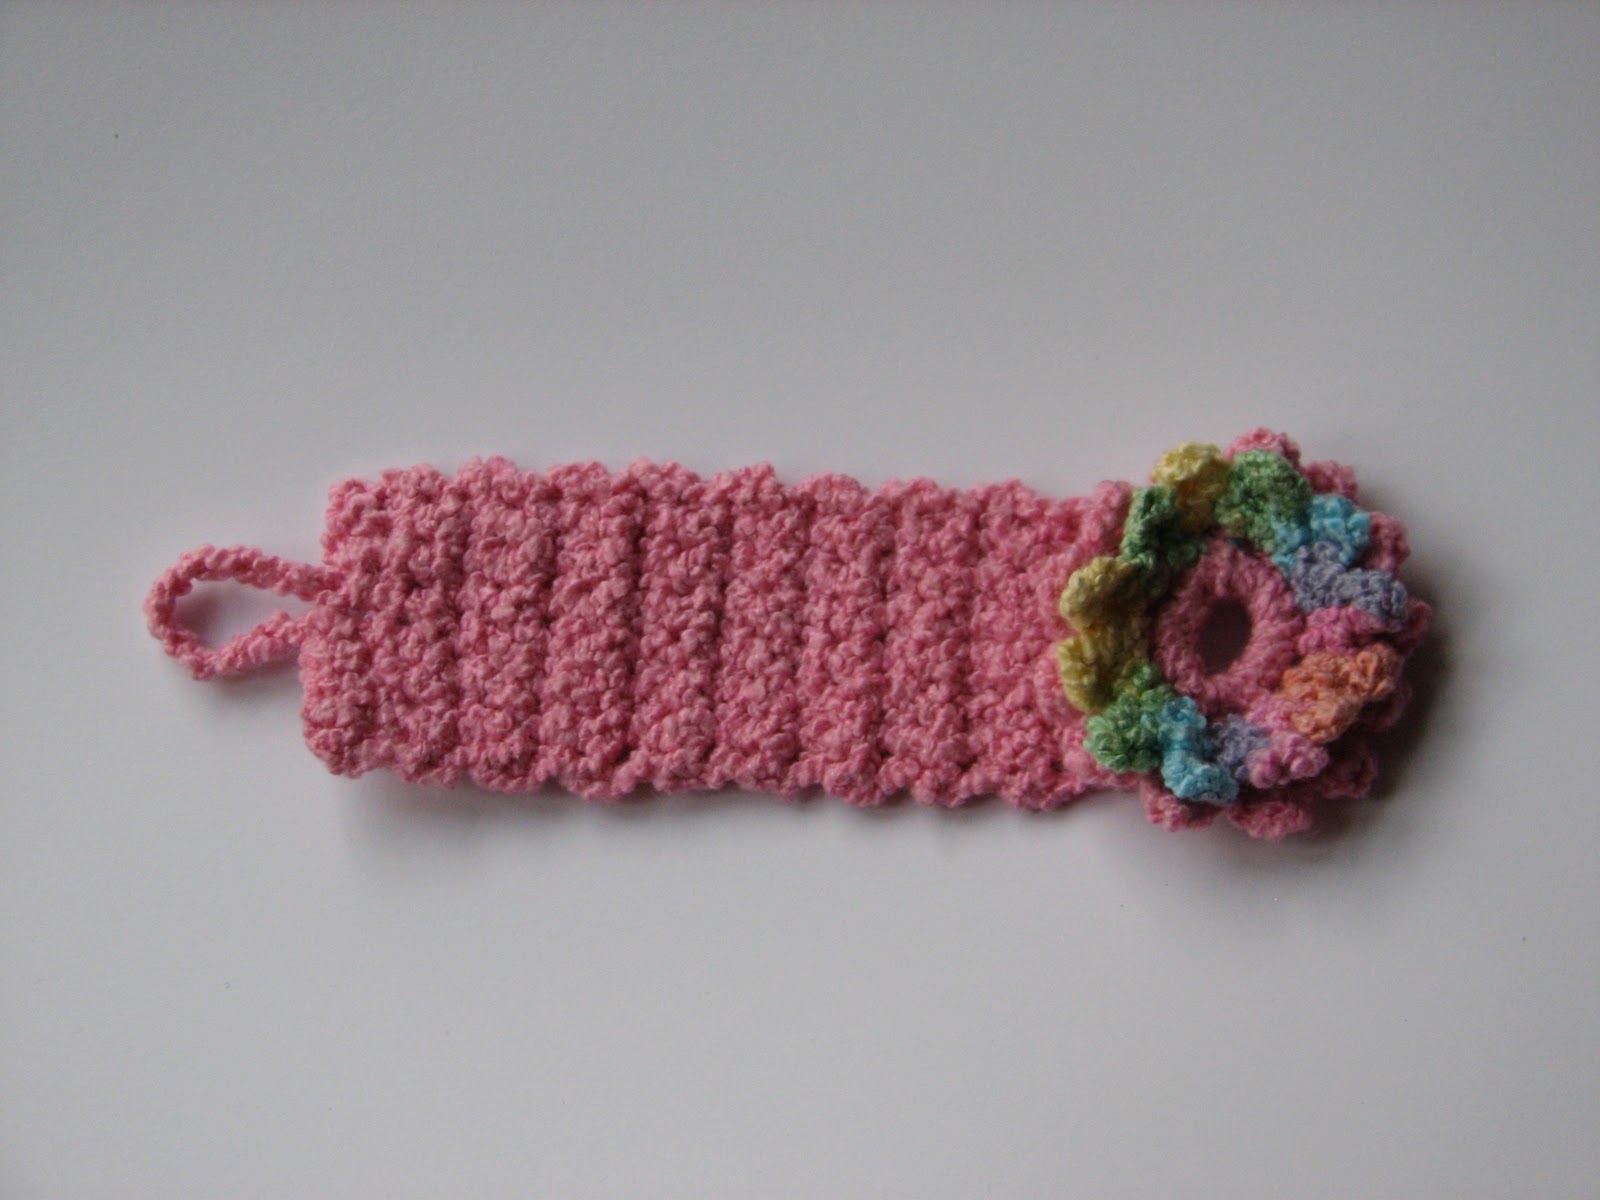 Wren Handmade: Crocheted Bracelets - Knitting Crochet Sewing